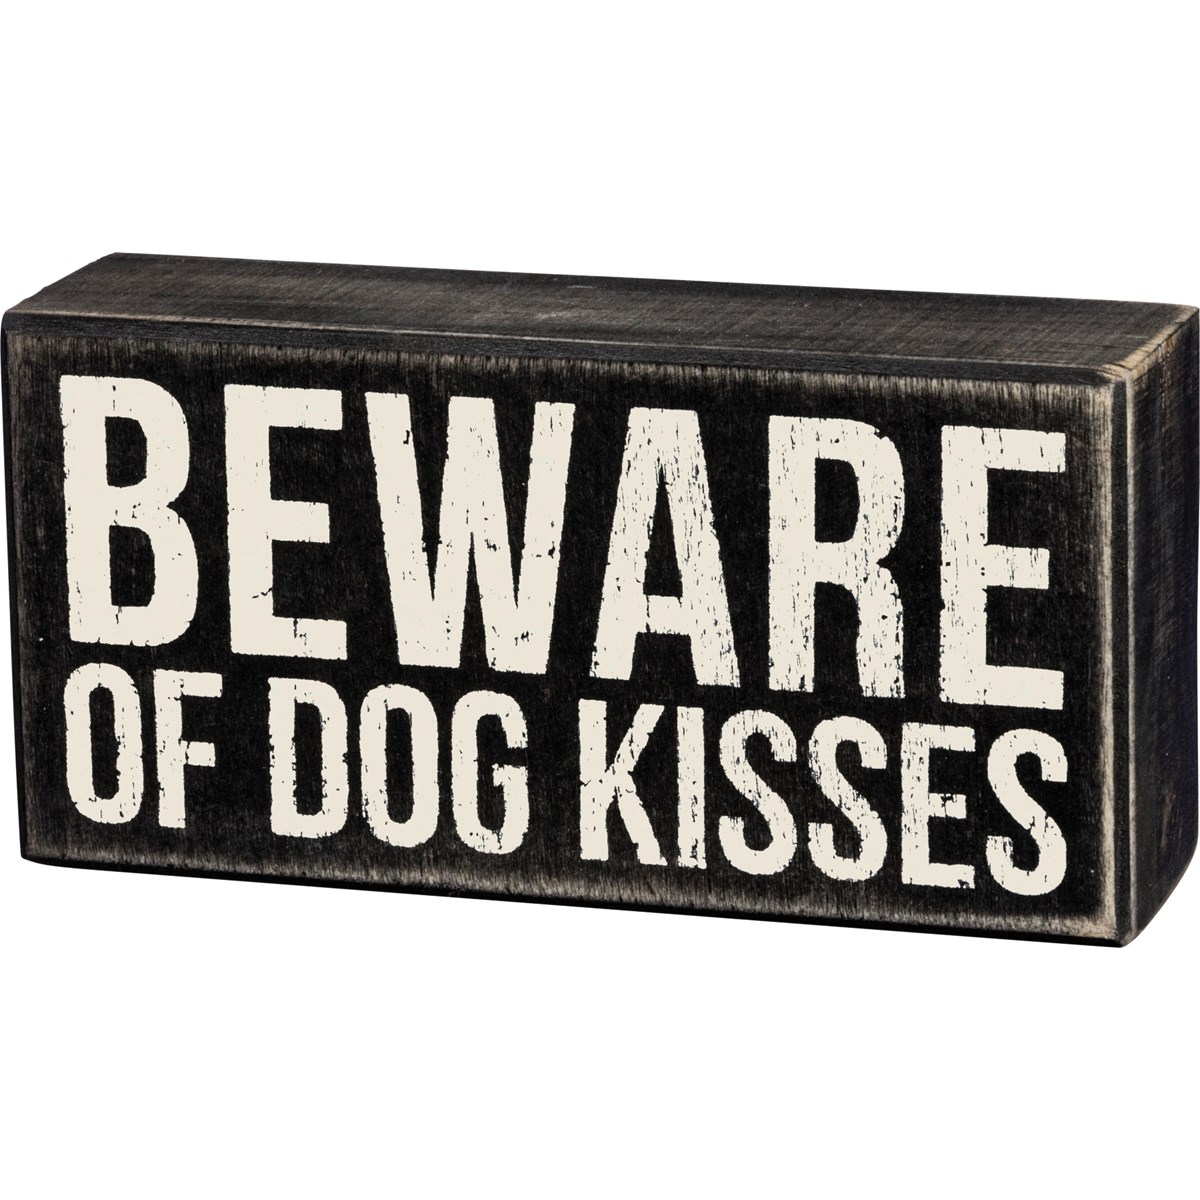 Dog Kisses Box Sign - Wood